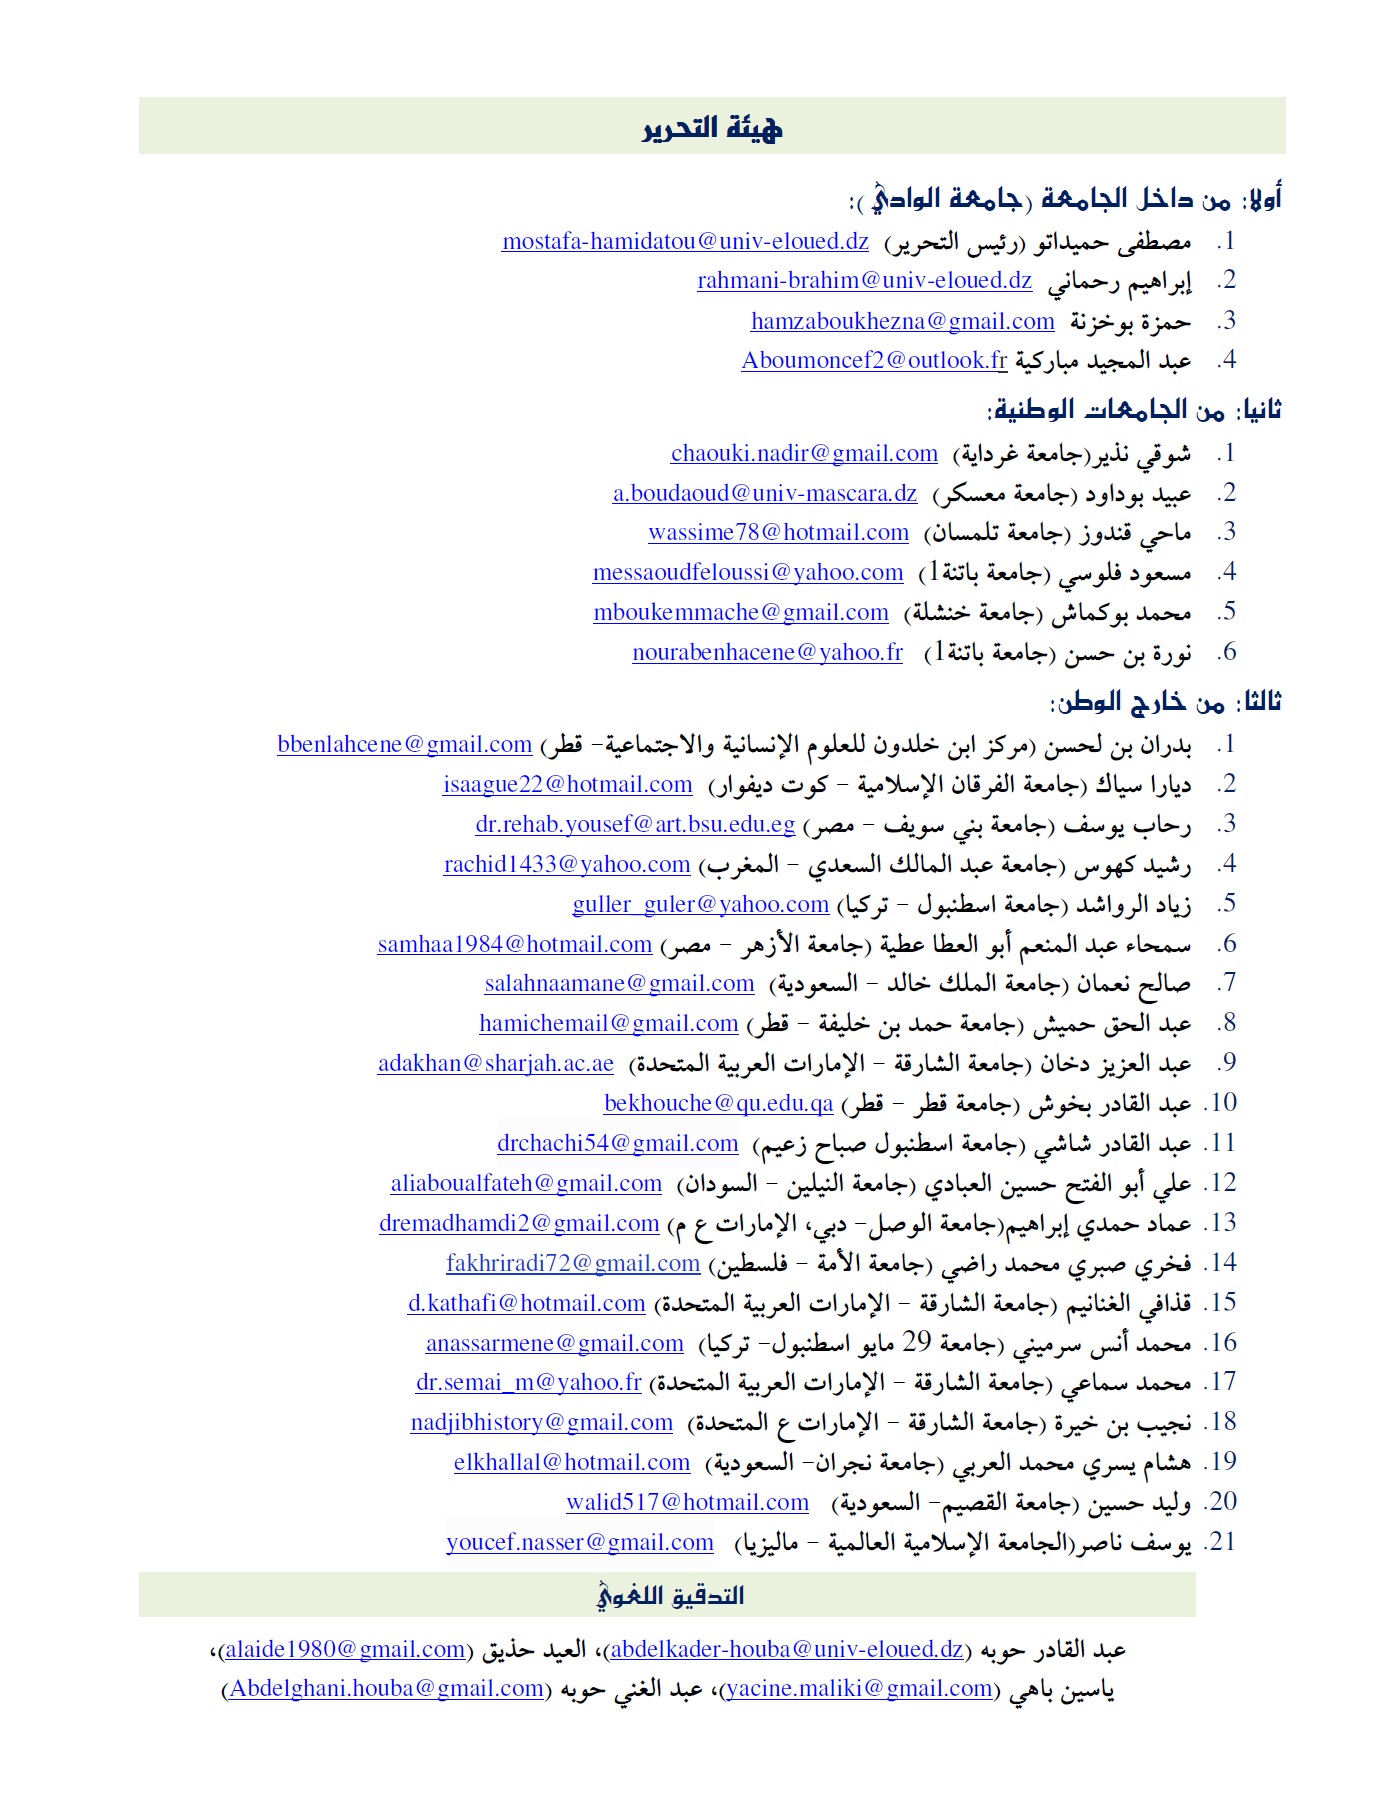 الهيئة العلمية للمجلة2 ـ عربي